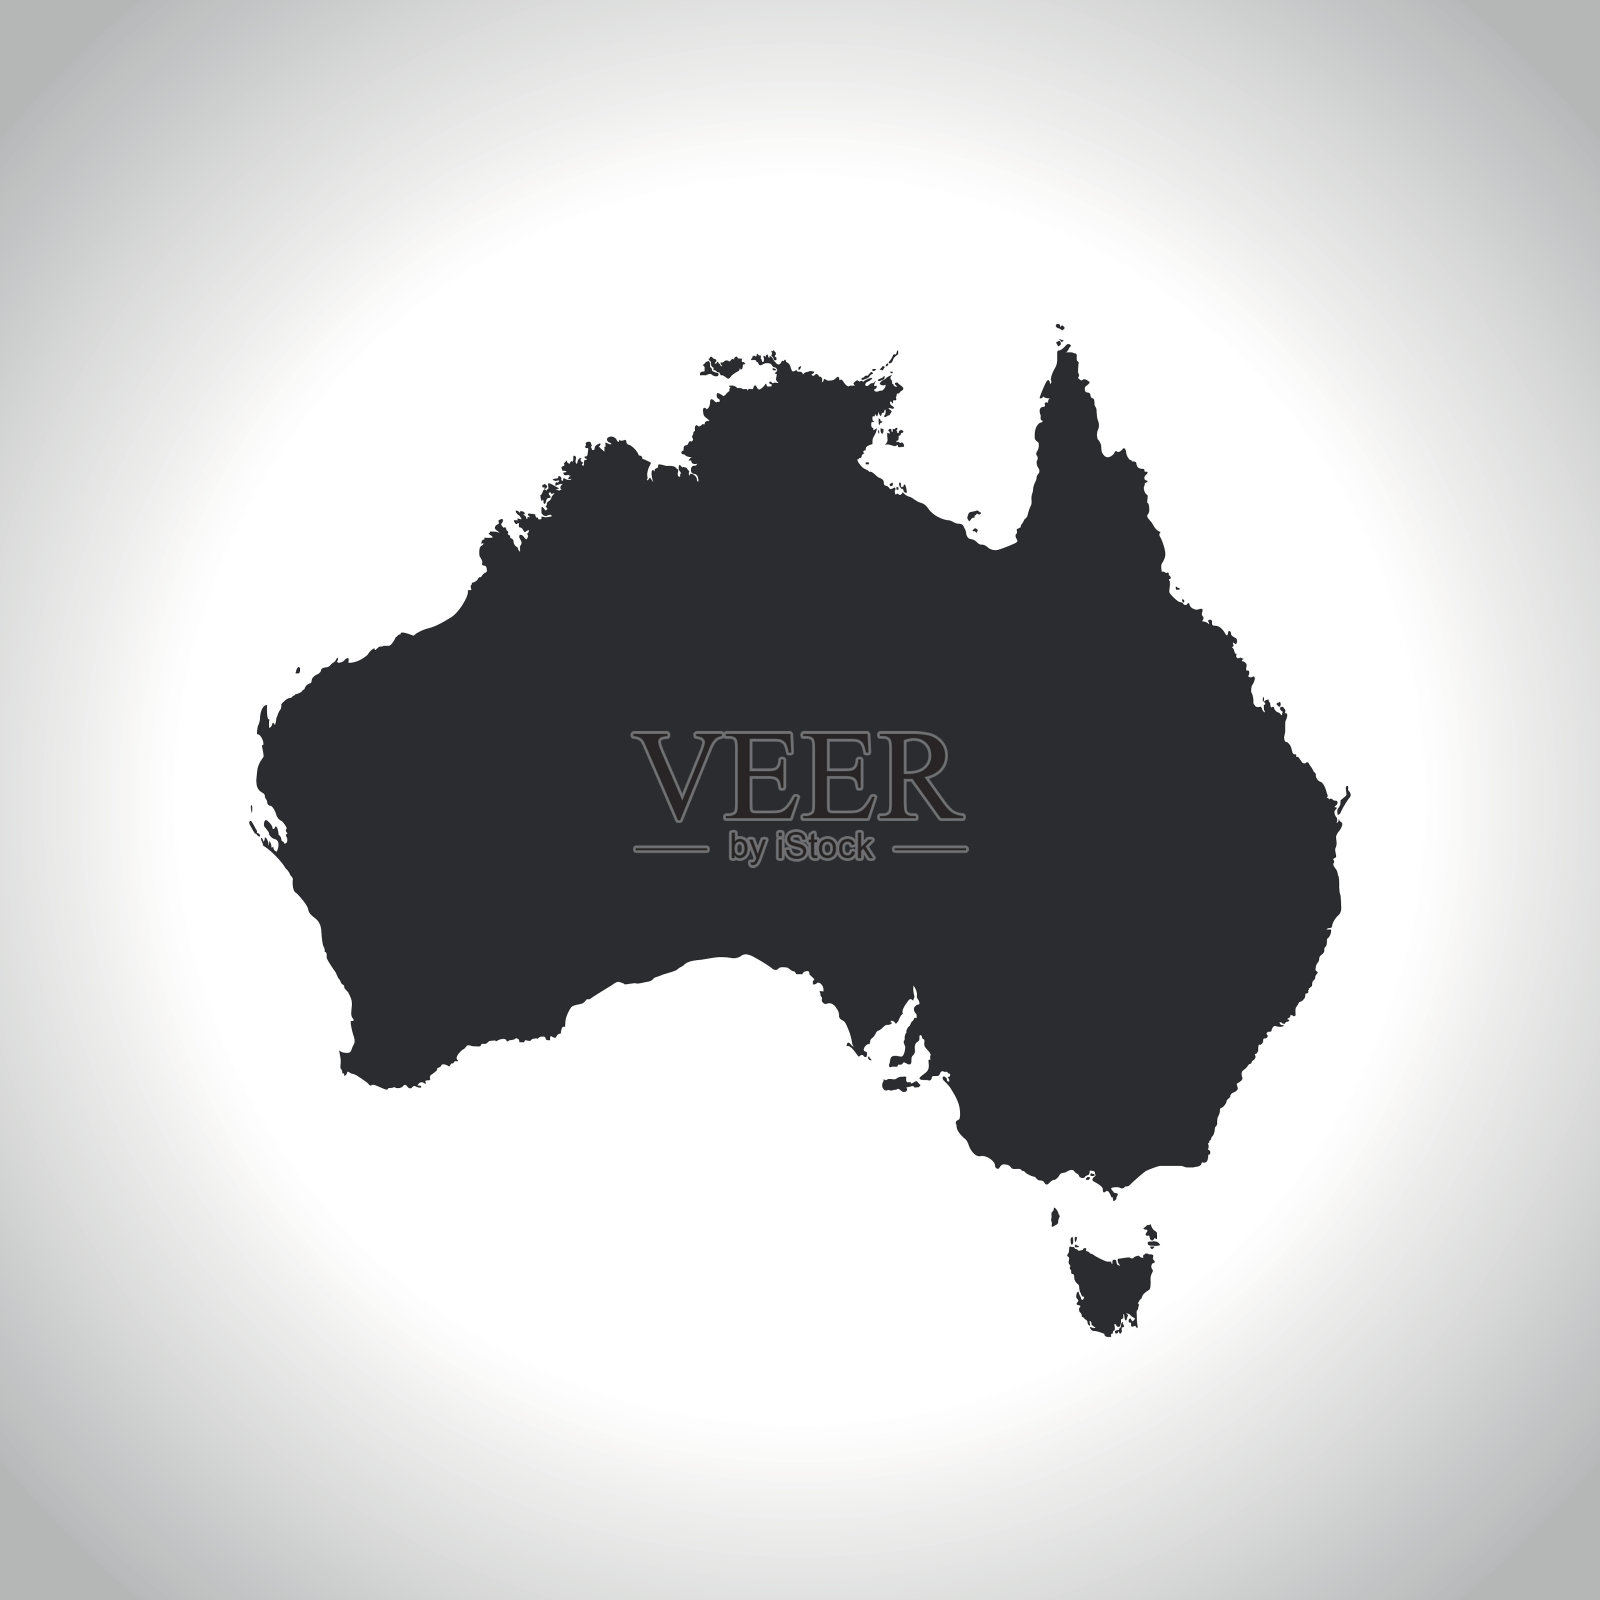 澳大利亚的地图插画图片素材